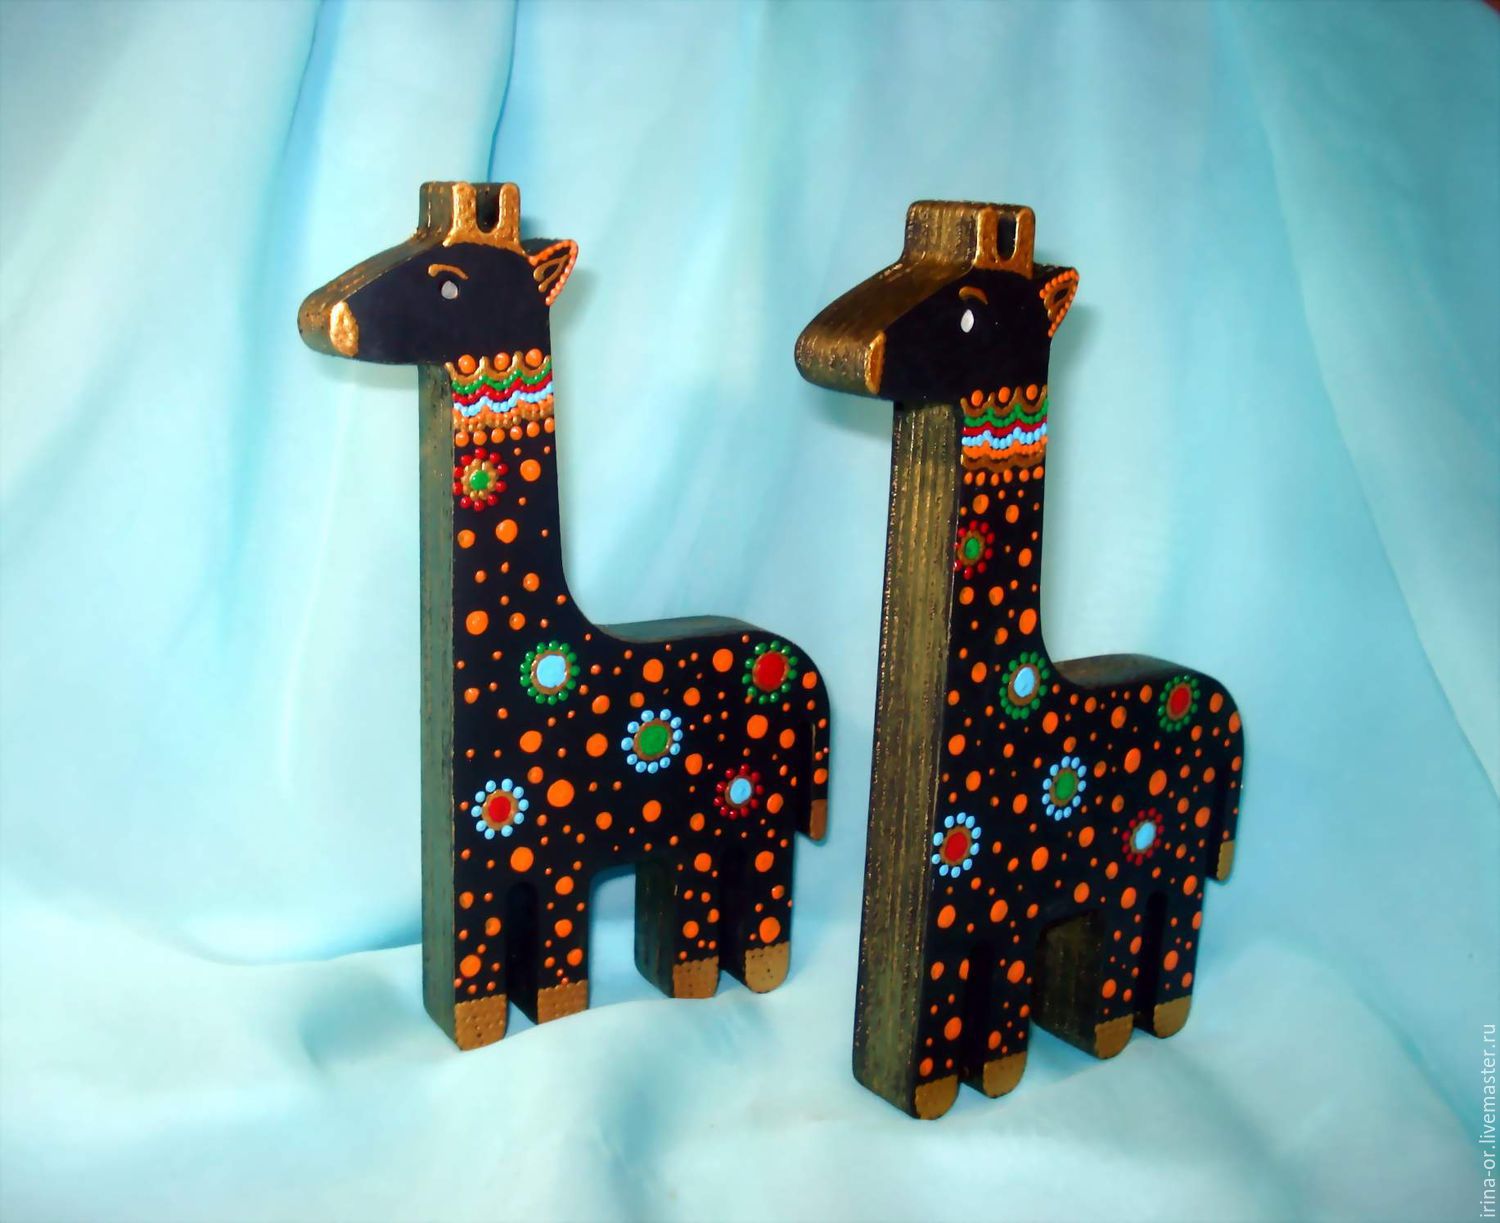 Интерьерное украшение Статуэтка "Веселый жираф". Точечная роспись